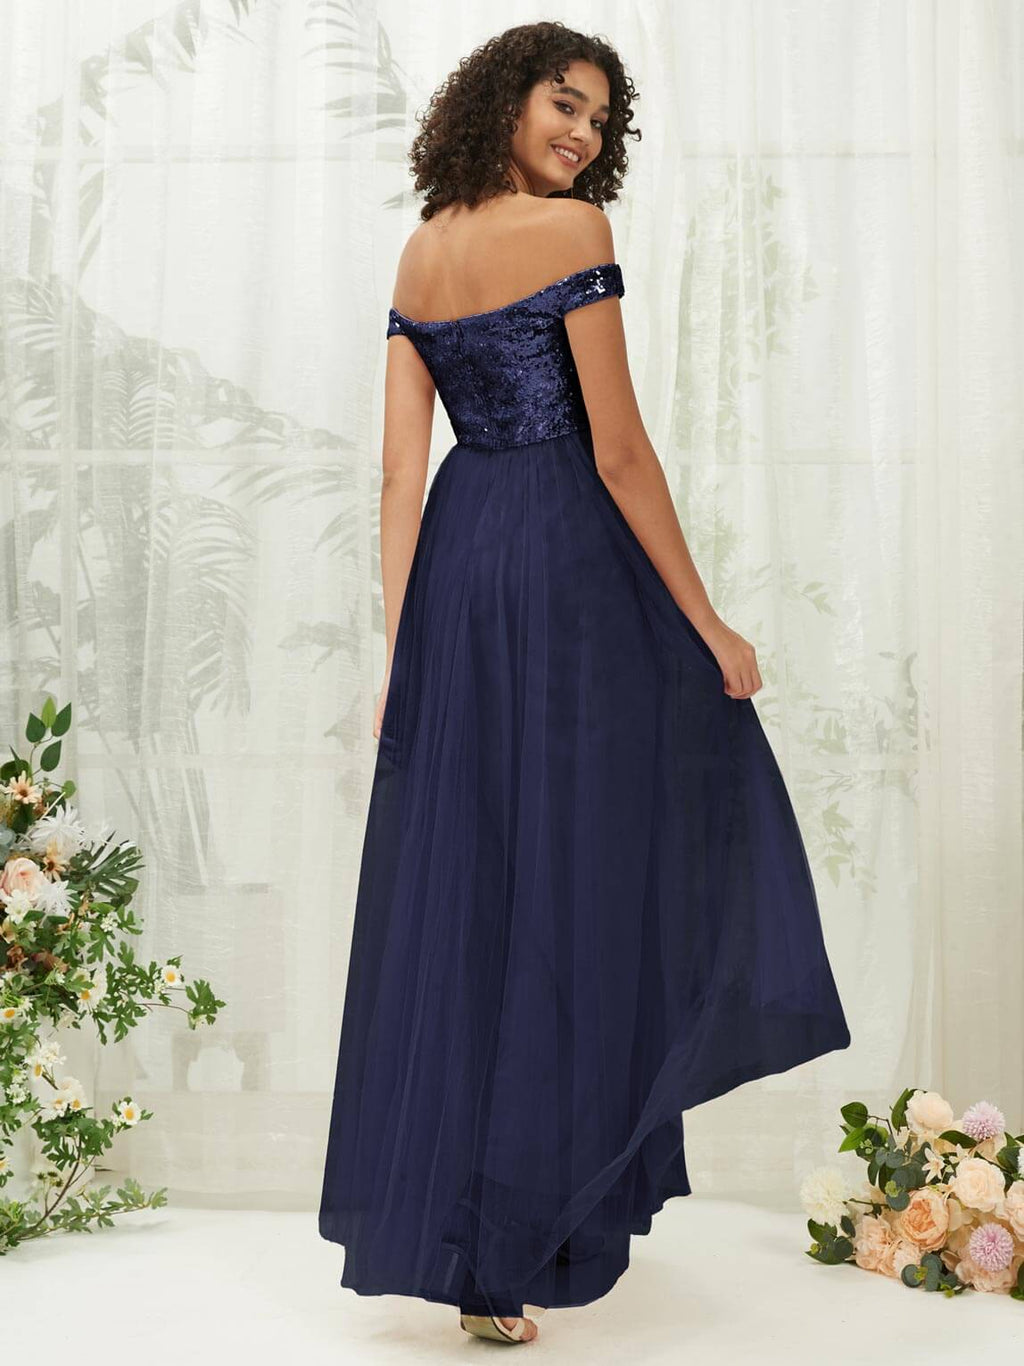 NZ Bridal Navy Blue Off Shoulder Sequin Tulle Prom Dress 00277ee Esther a